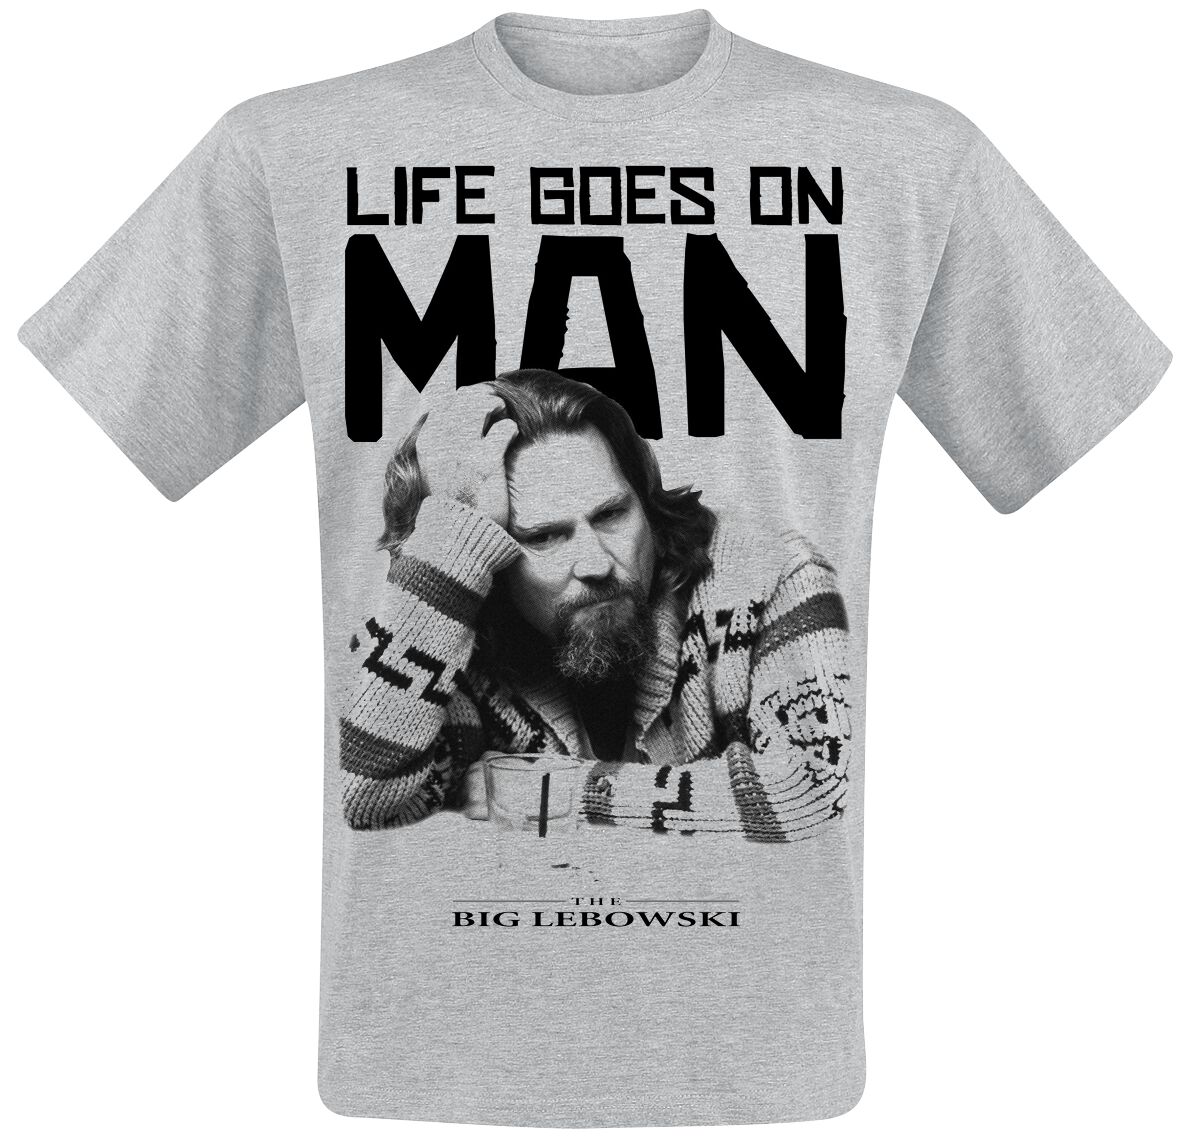 The Big Lebowski T-Shirt - Life Goes On Man - S bis XXL - für Männer - Größe XXL - grau meliert  - Lizenzierter Fanartikel